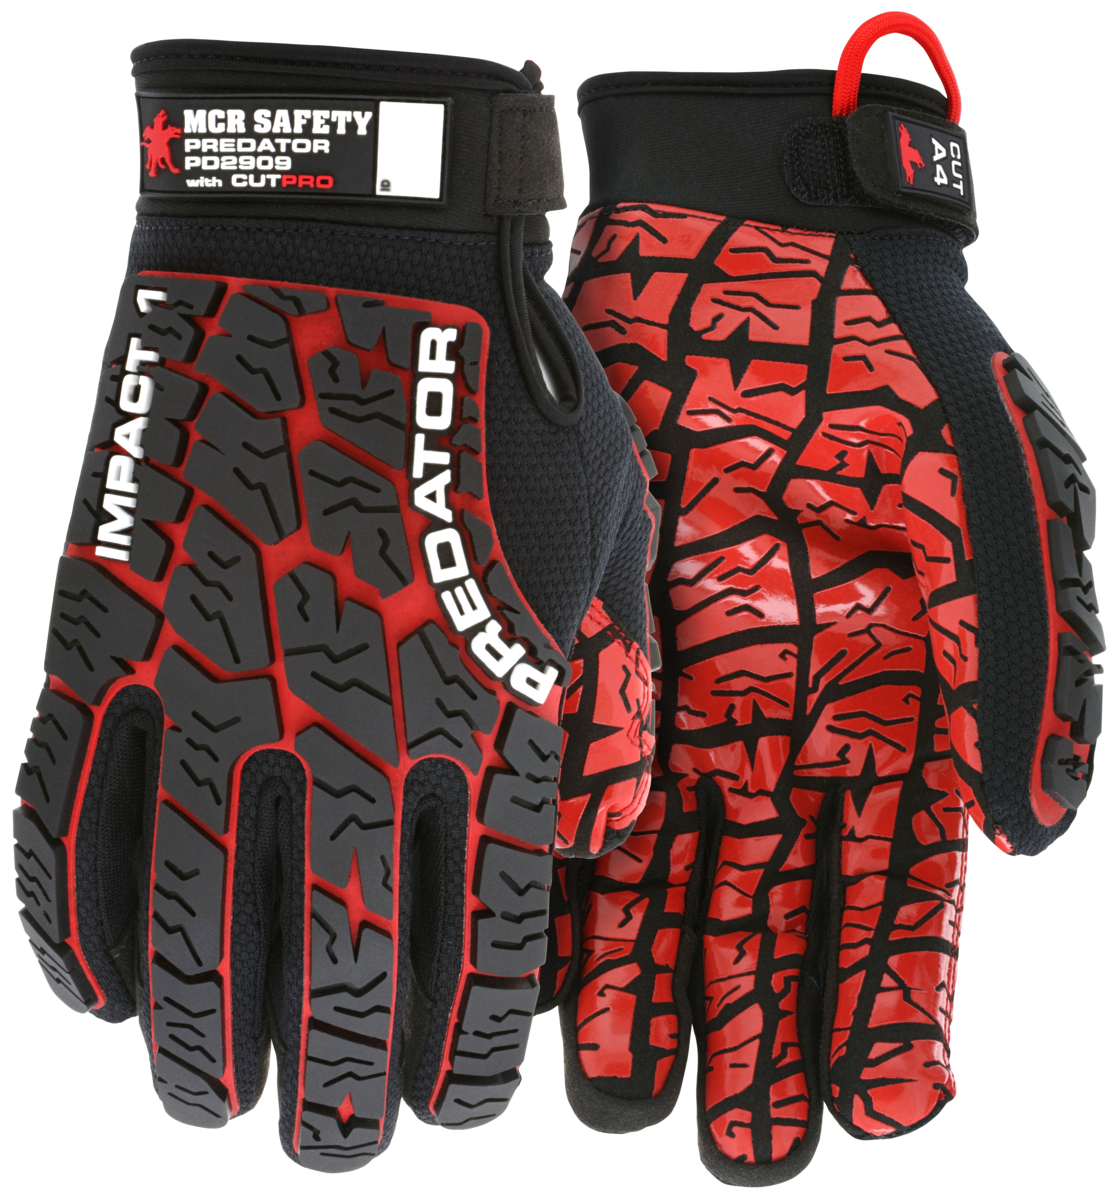 PD2909 - Predator® CutPro Mechanics Gloves